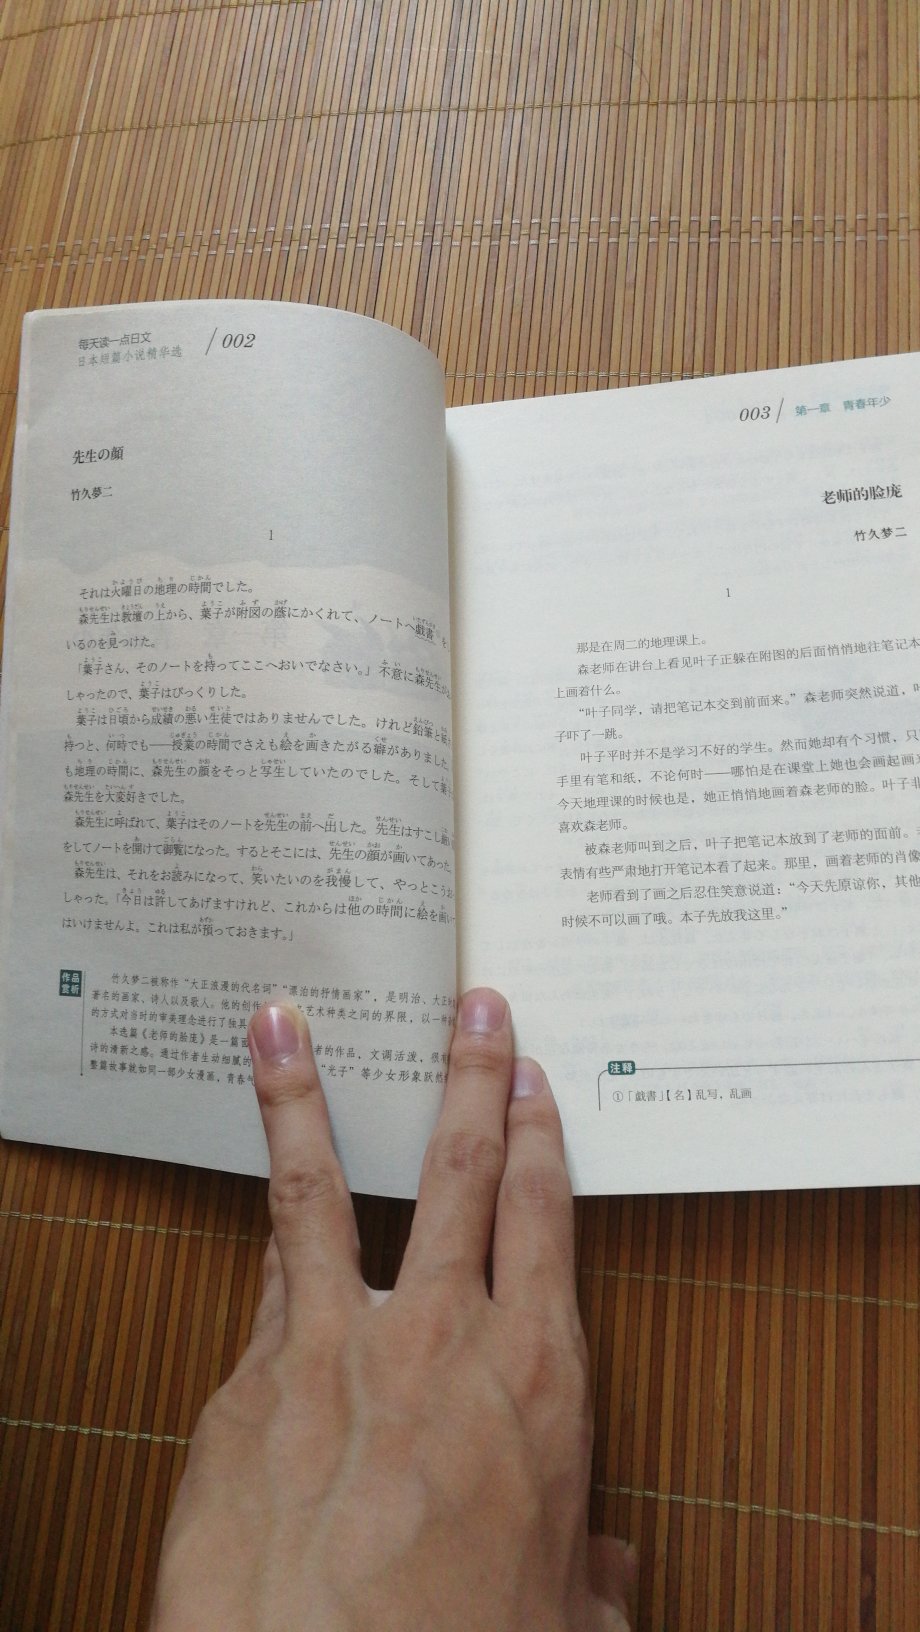 一边日语一边汉字，里面还有例如太宰芥川夏目之类的名篇，蛮好的，挺适合做日语课外阅读的。